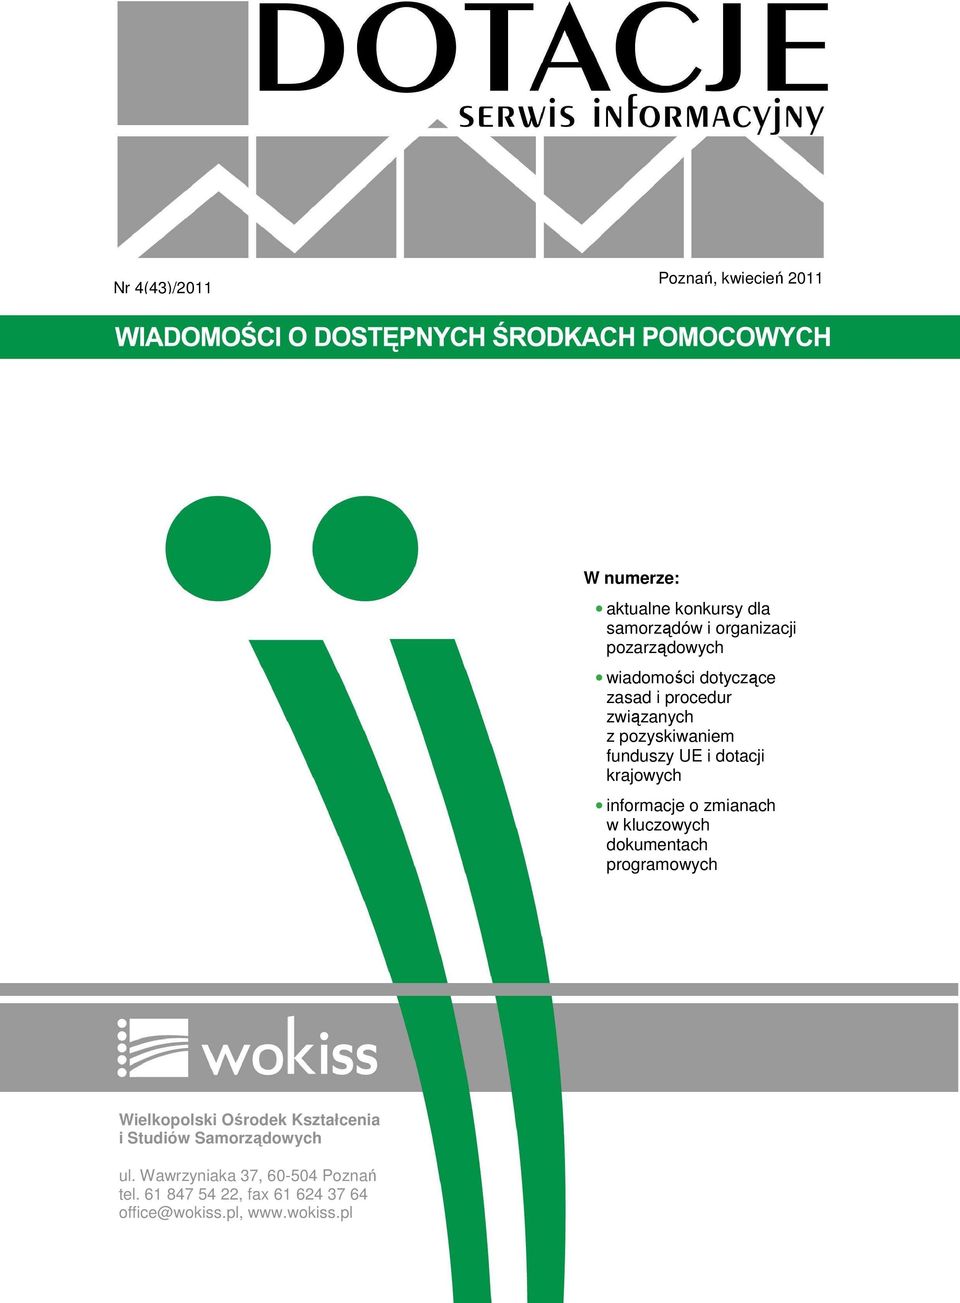 o zmianach w kluczowych dokumentach programowych Wielkopolski Ośrodek Kształcenia i Studiów Samorządowych